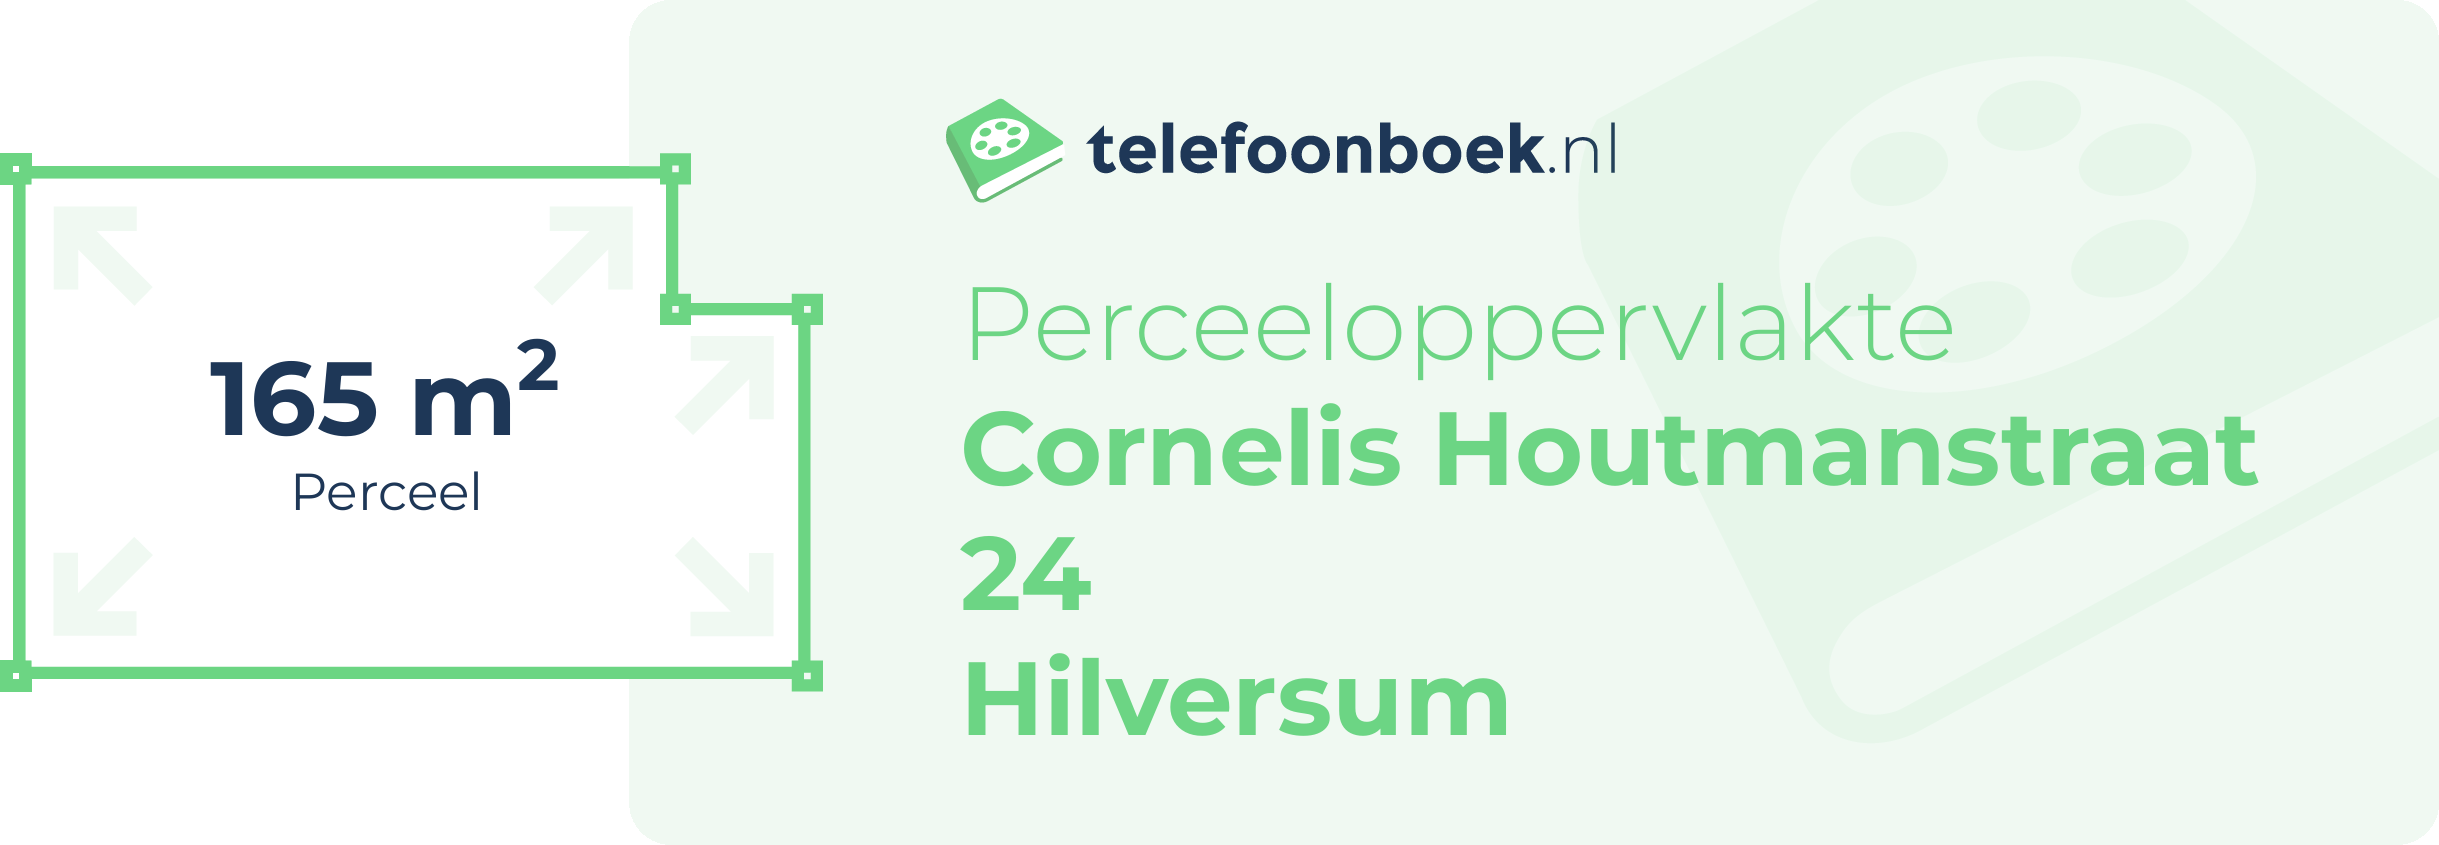 Perceeloppervlakte Cornelis Houtmanstraat 24 Hilversum